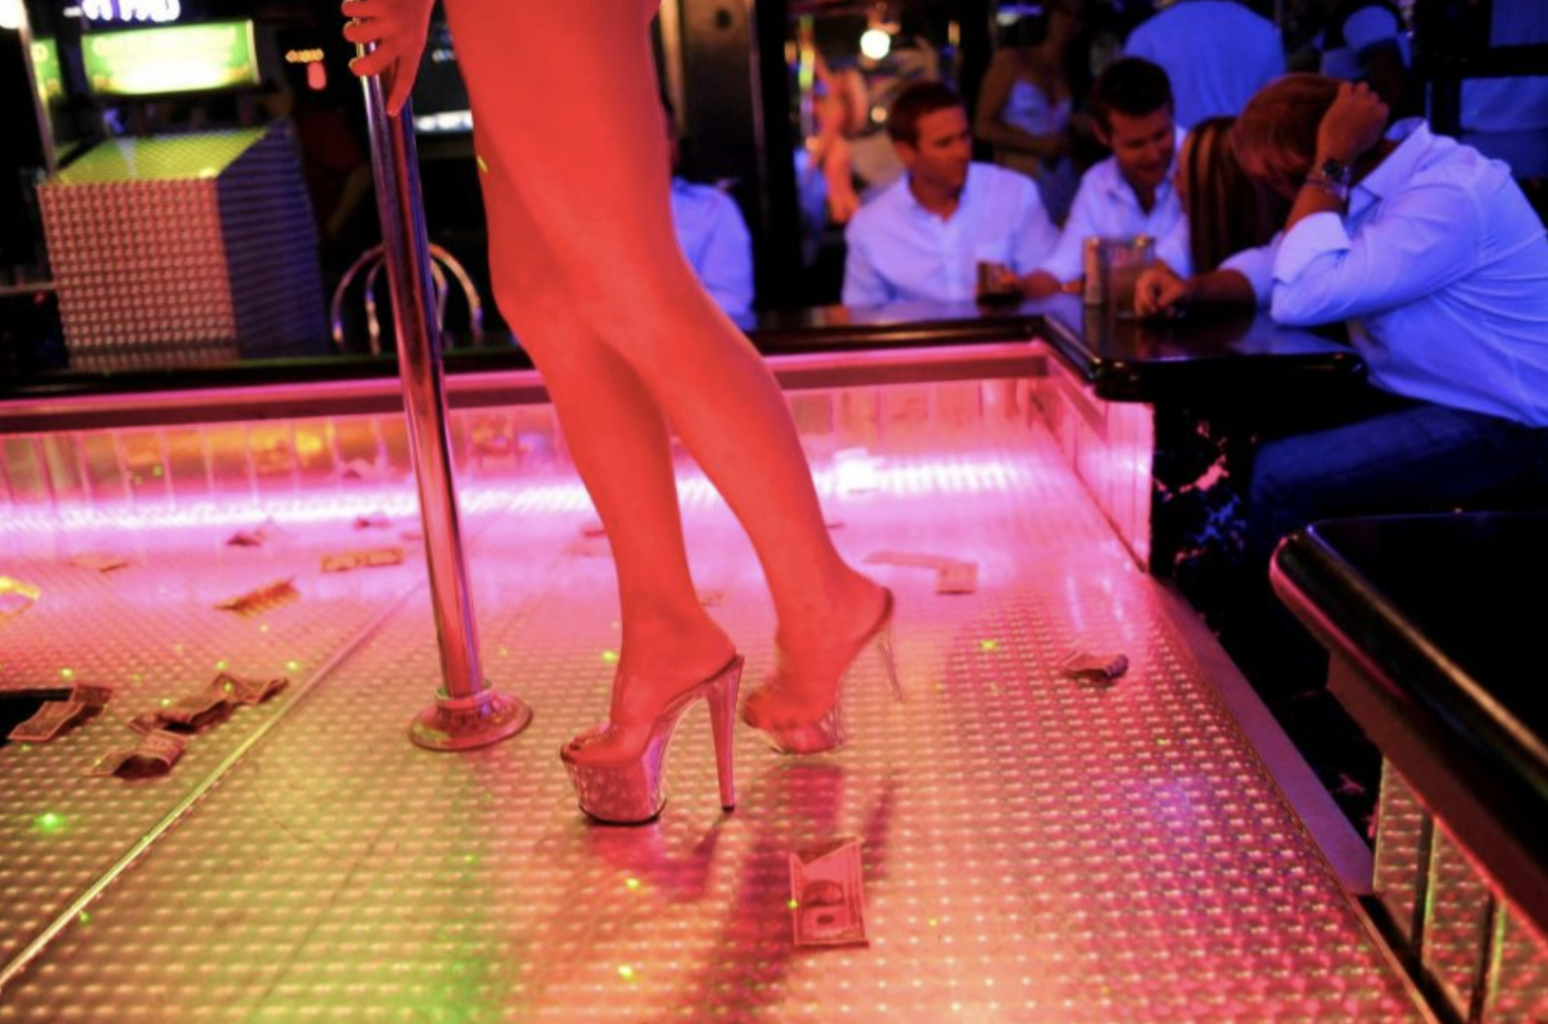 Strip clubs